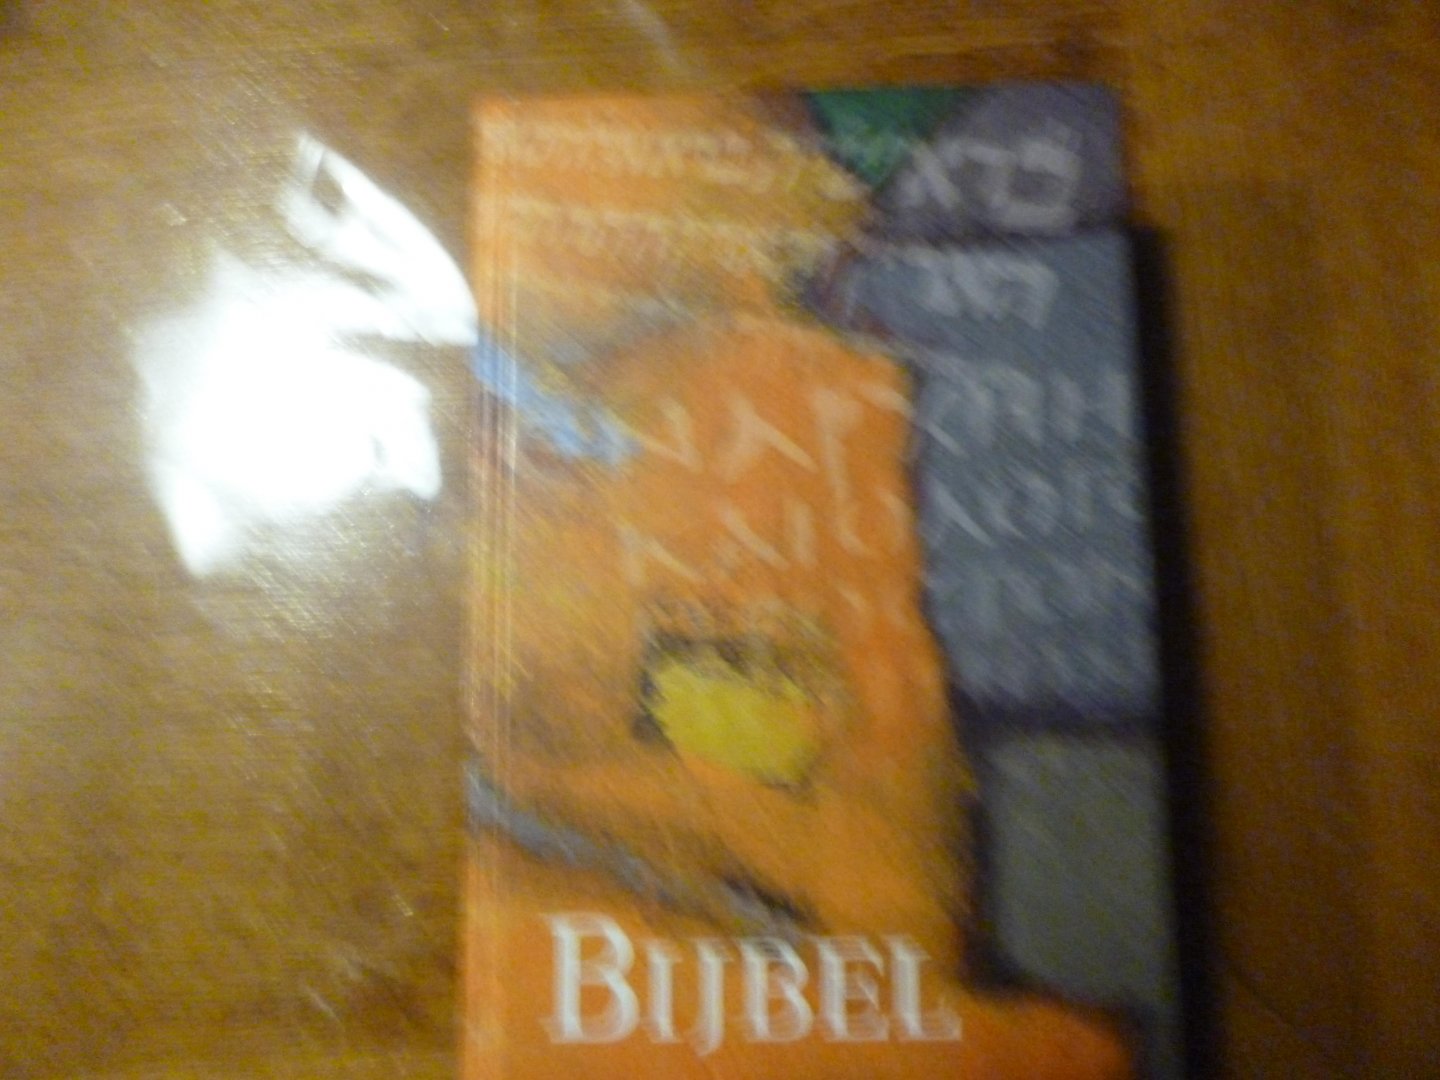  - Bijbel met deuterocanonieke boeken